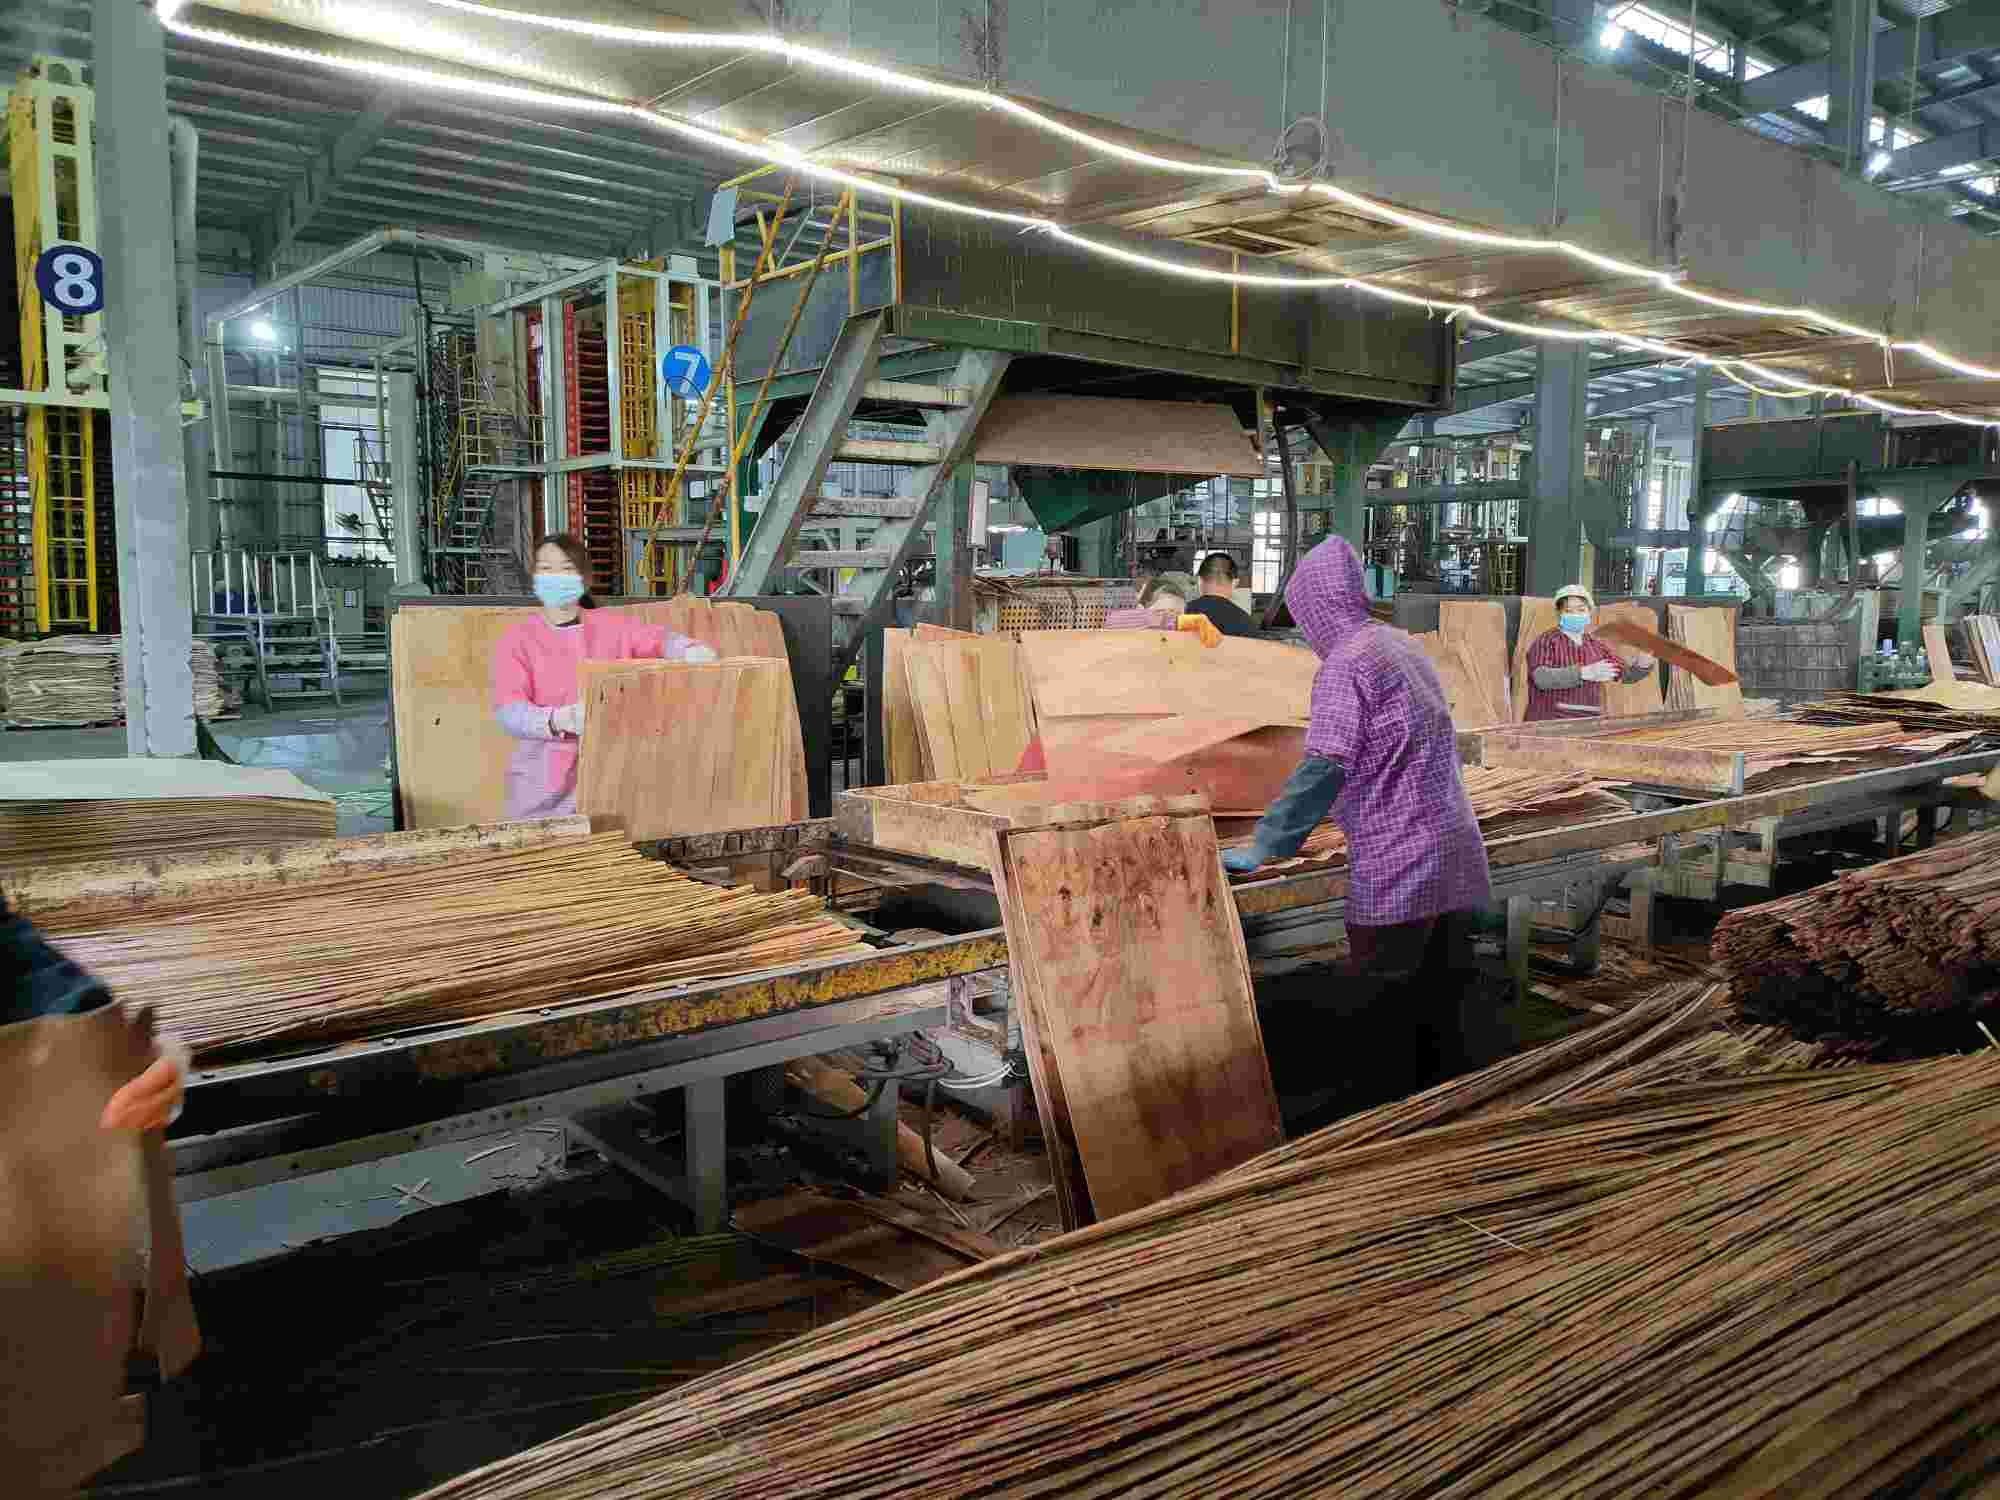 福建福州福州木地板厂招聘15人,每天330块钱包吃住,入职七